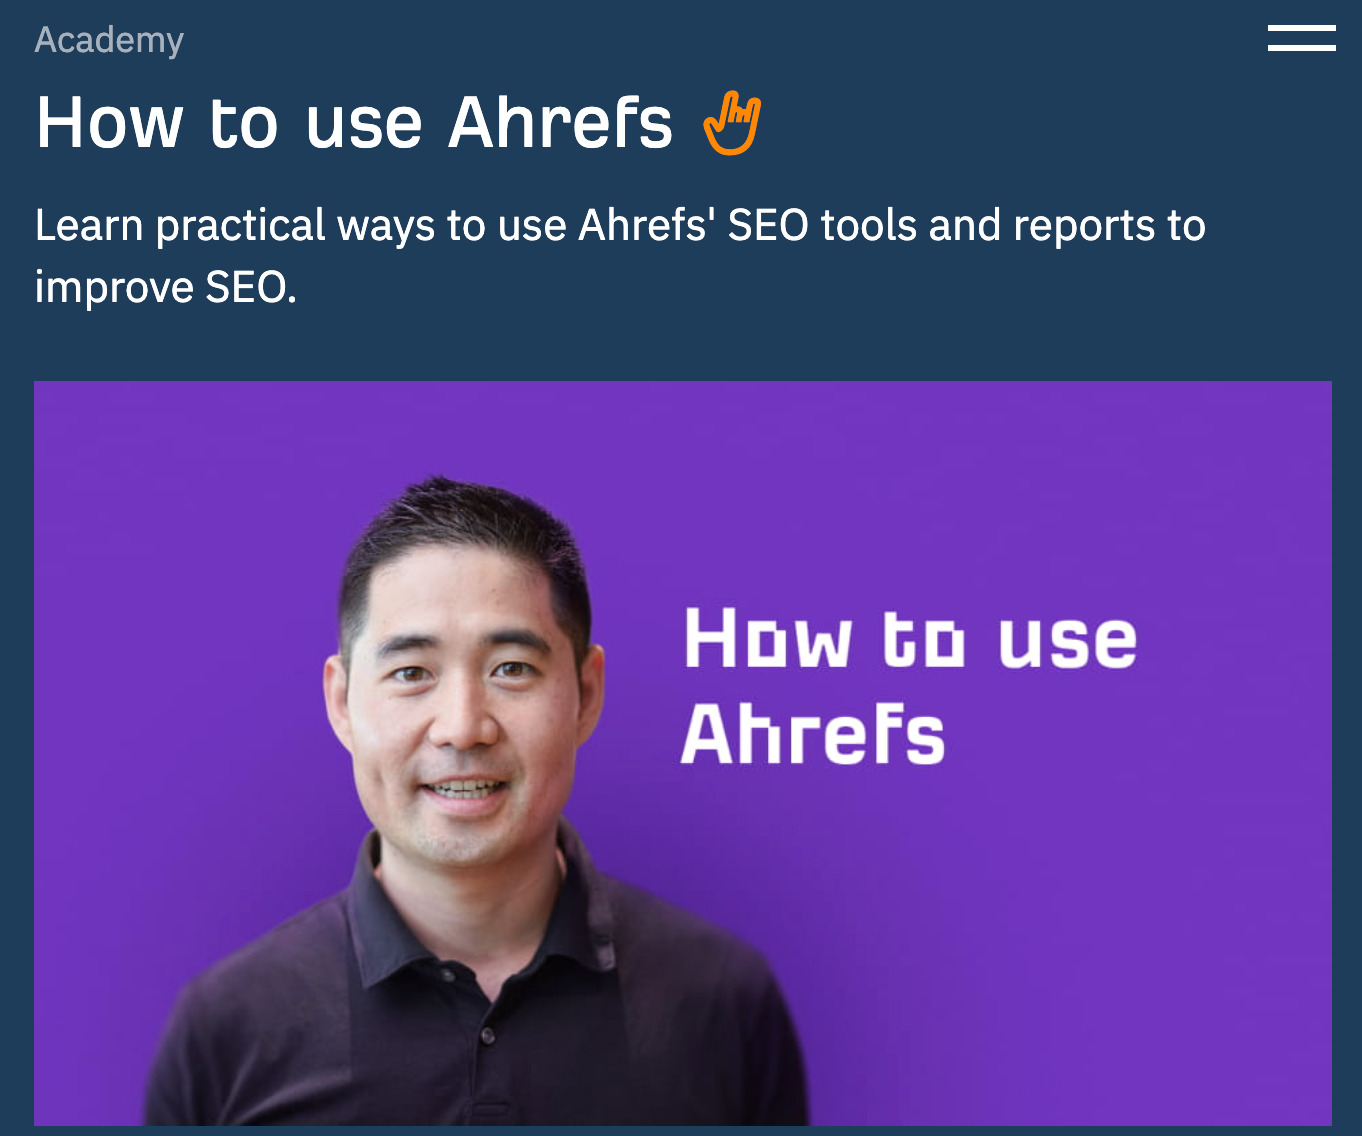 Ahrefs Academy's "How to use Ahrefs" course 